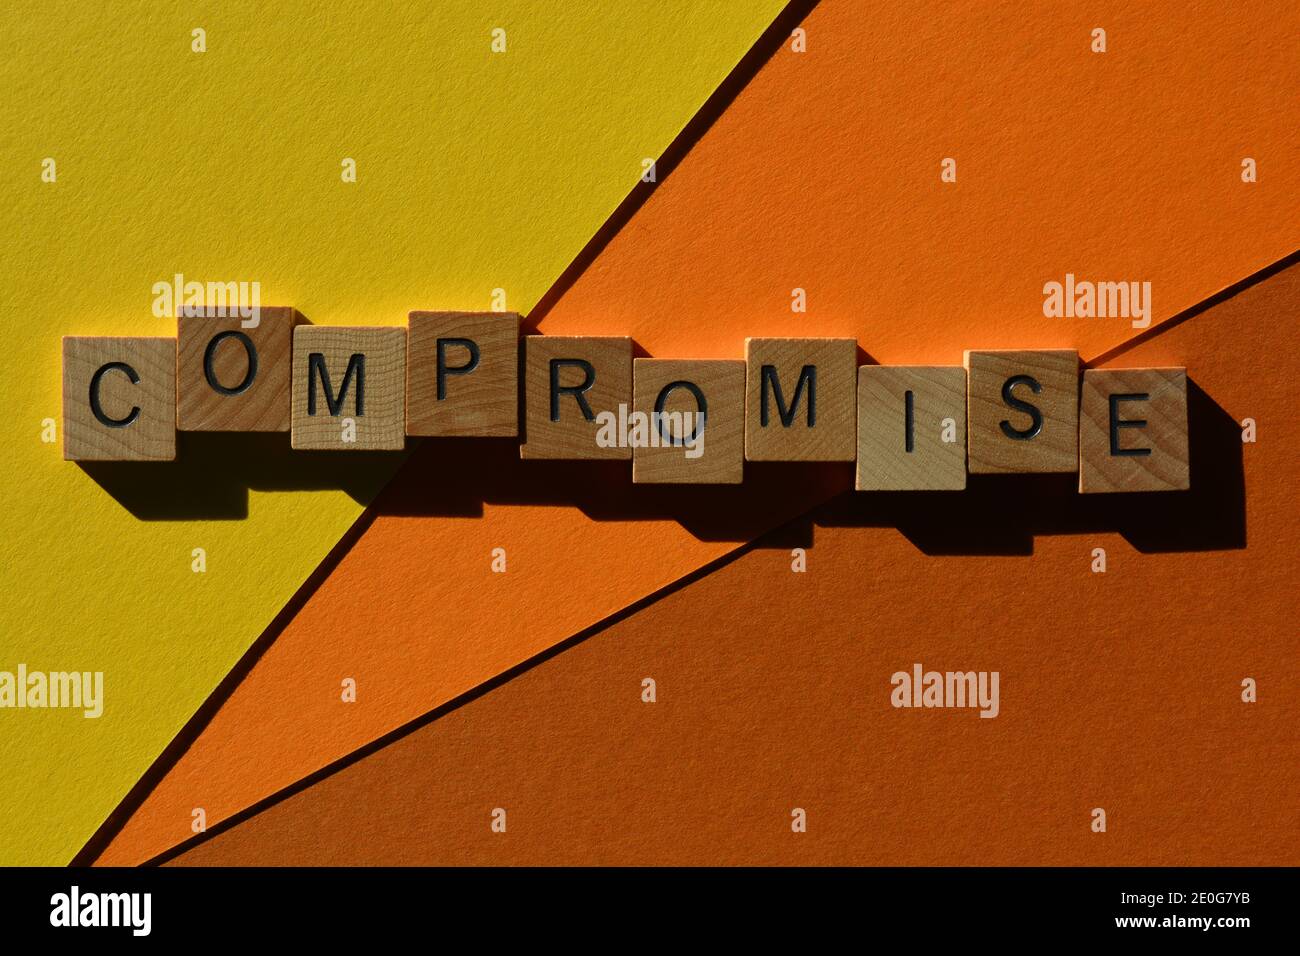 Kompromiss, Wort in Holzalphabet Buchstaben isoliert auf bunten Hintergrund Stockfoto